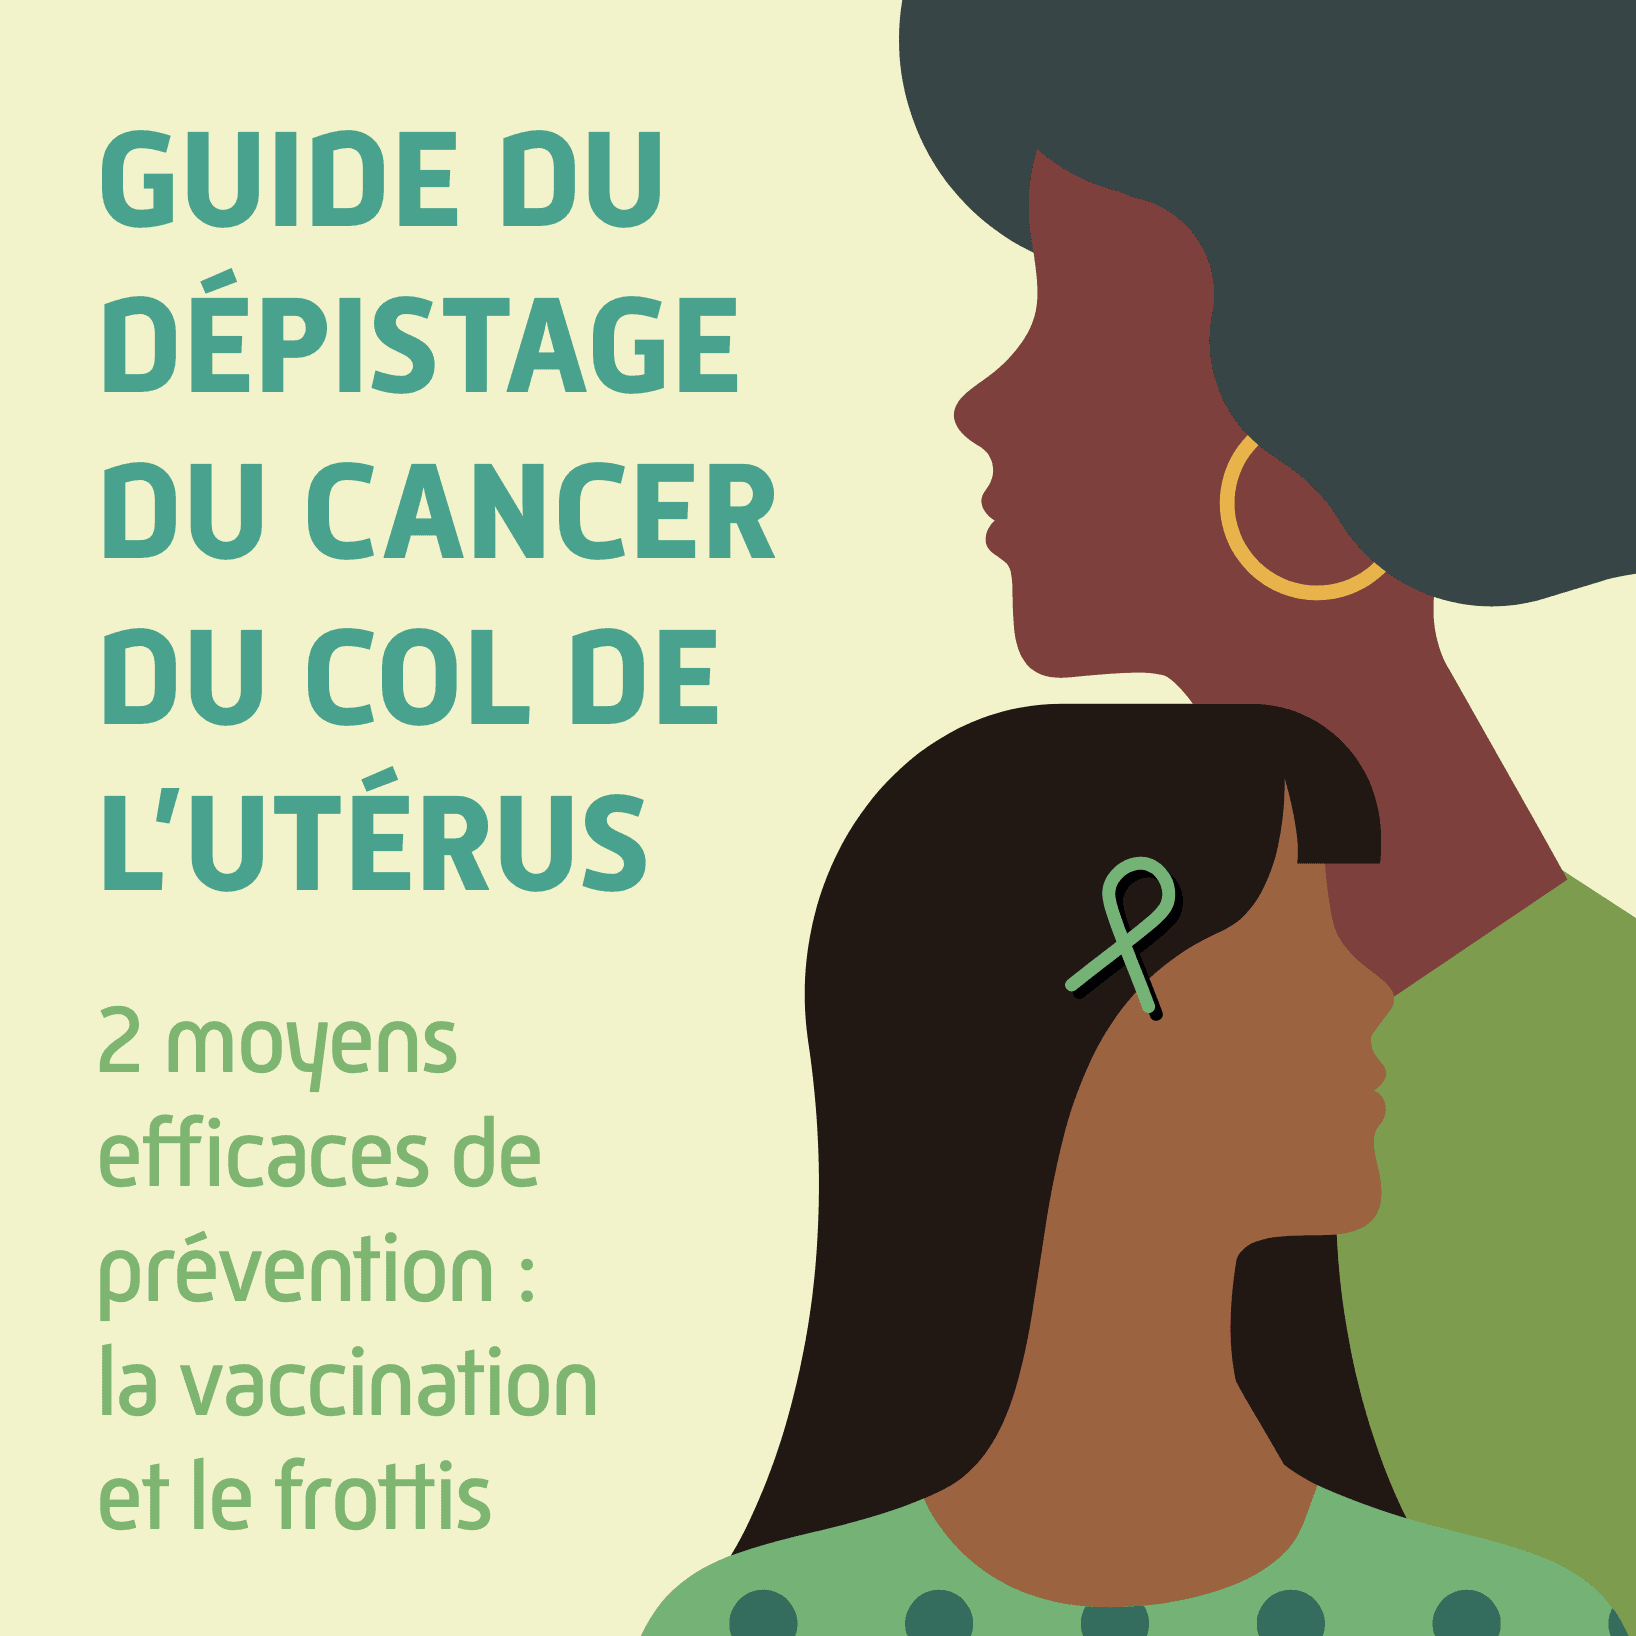 Guide du dépistage du cancer du col de l’utérus – Livret